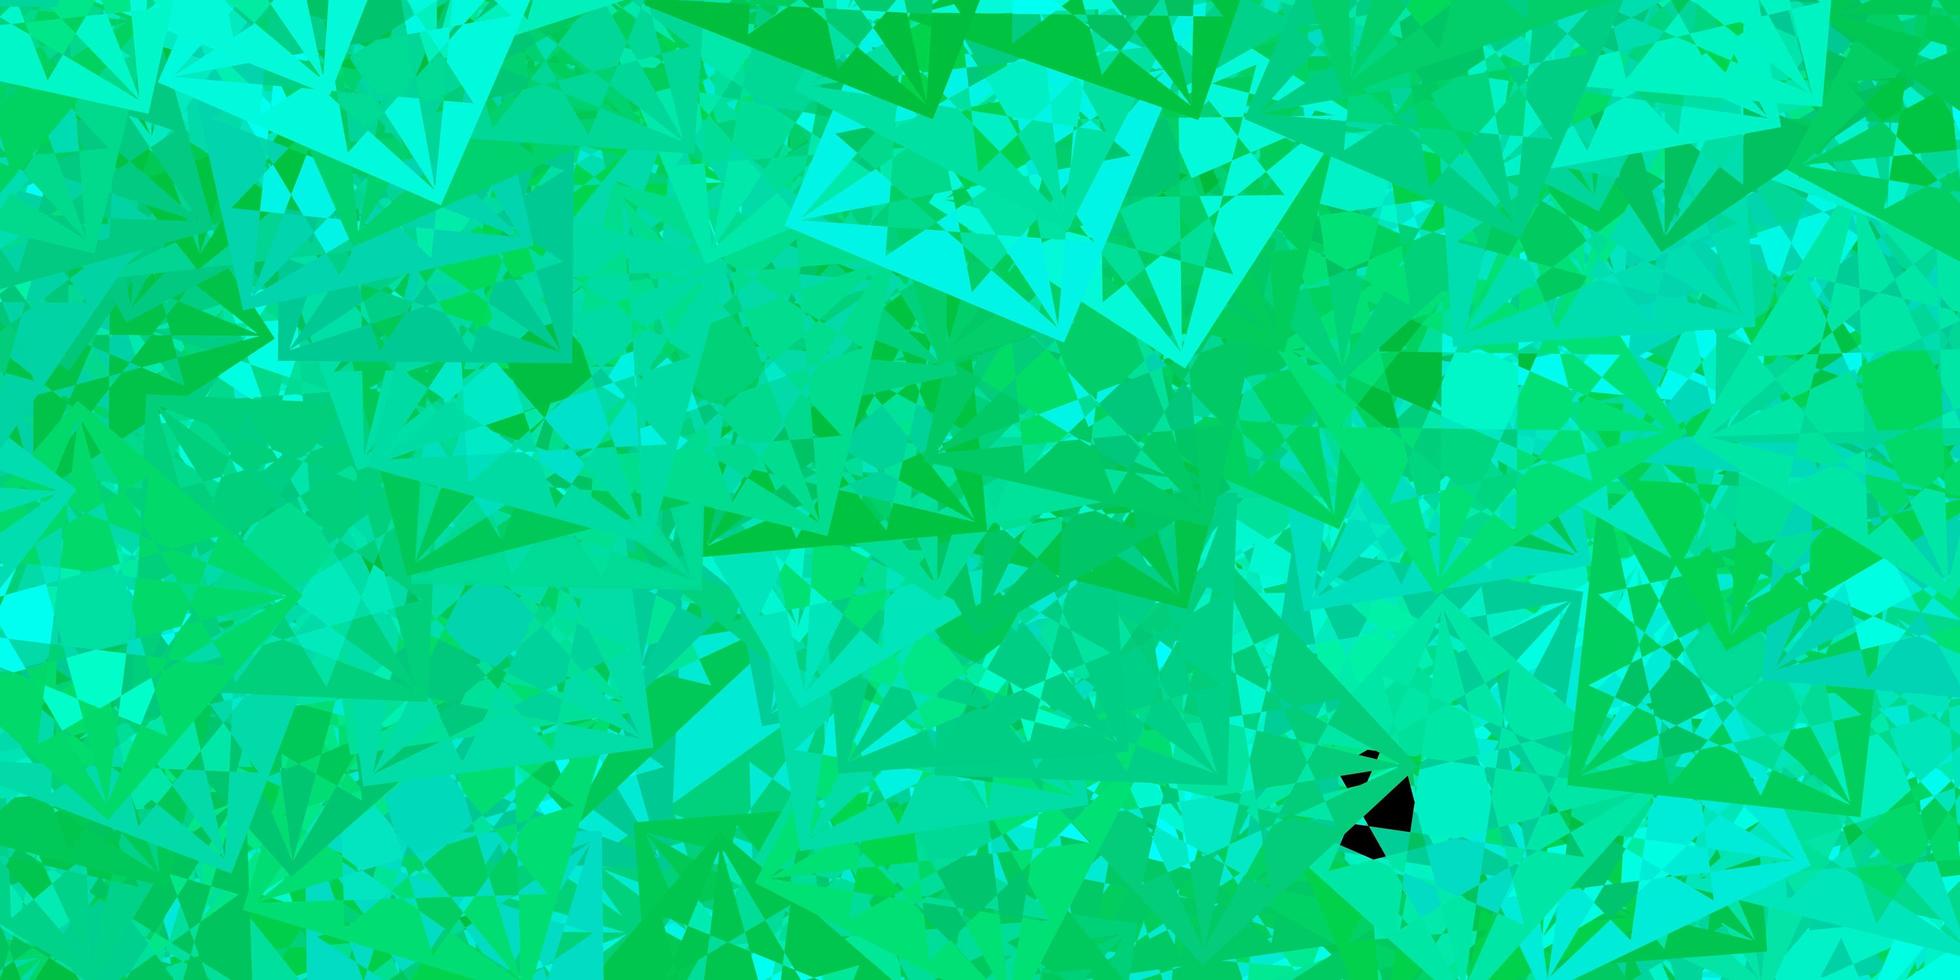 toile de fond de vecteur vert clair avec des triangles, des lignes.